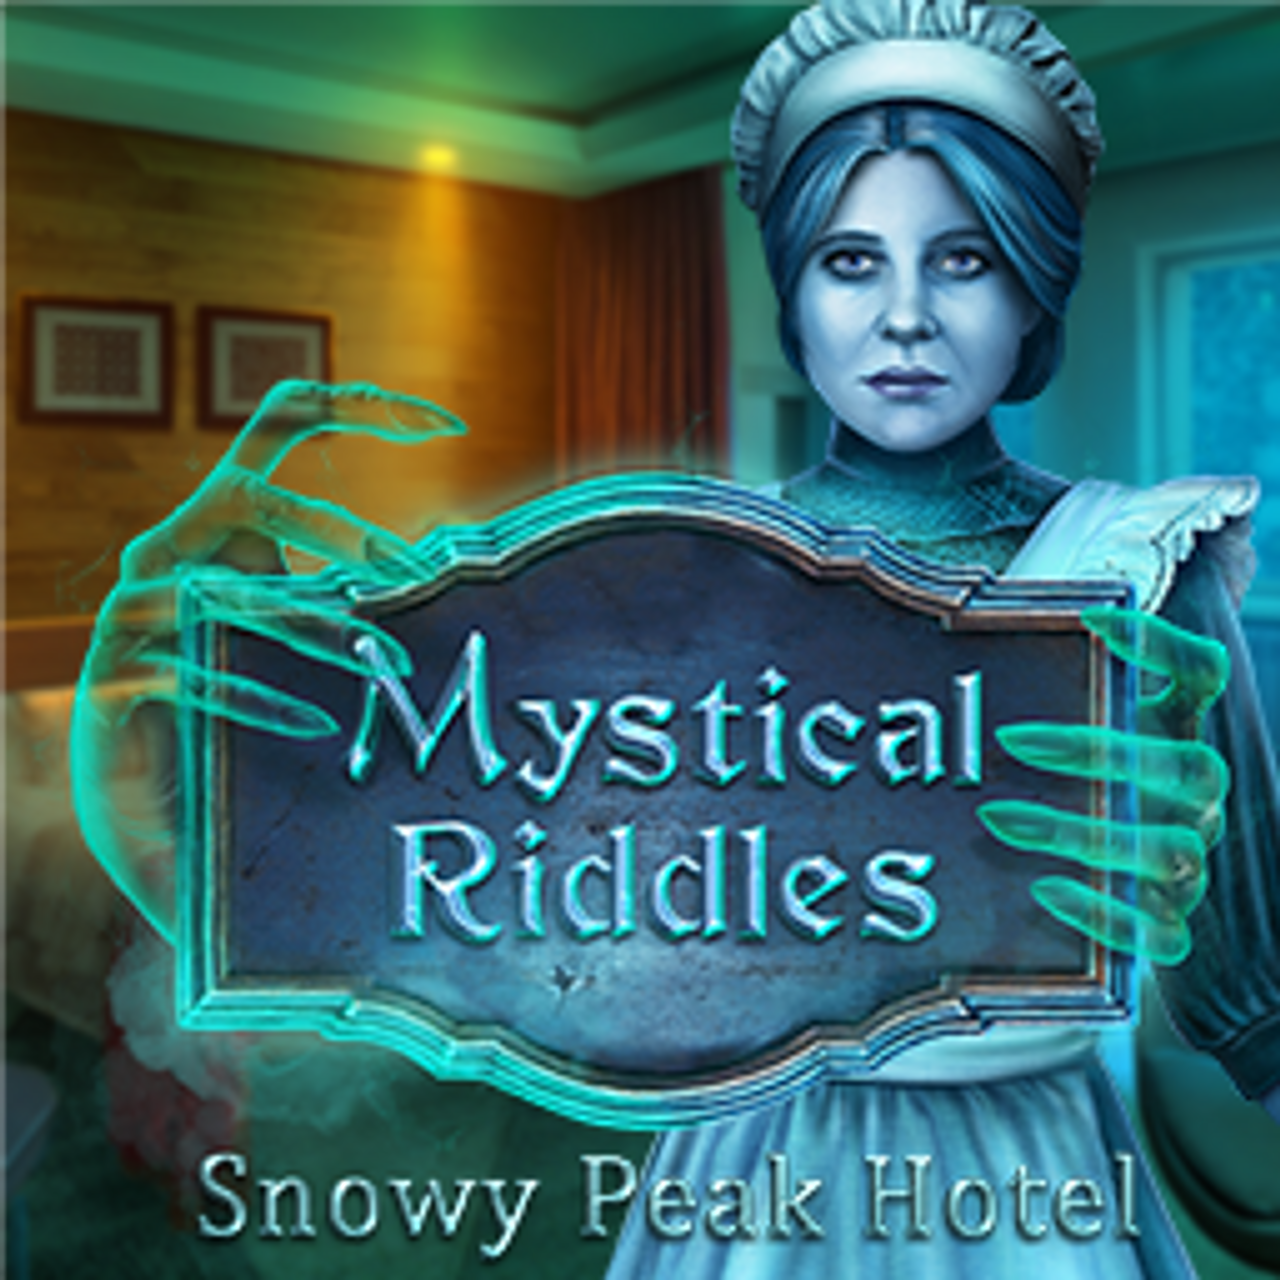 Mystical Riddles: Snowy Peak Hotel